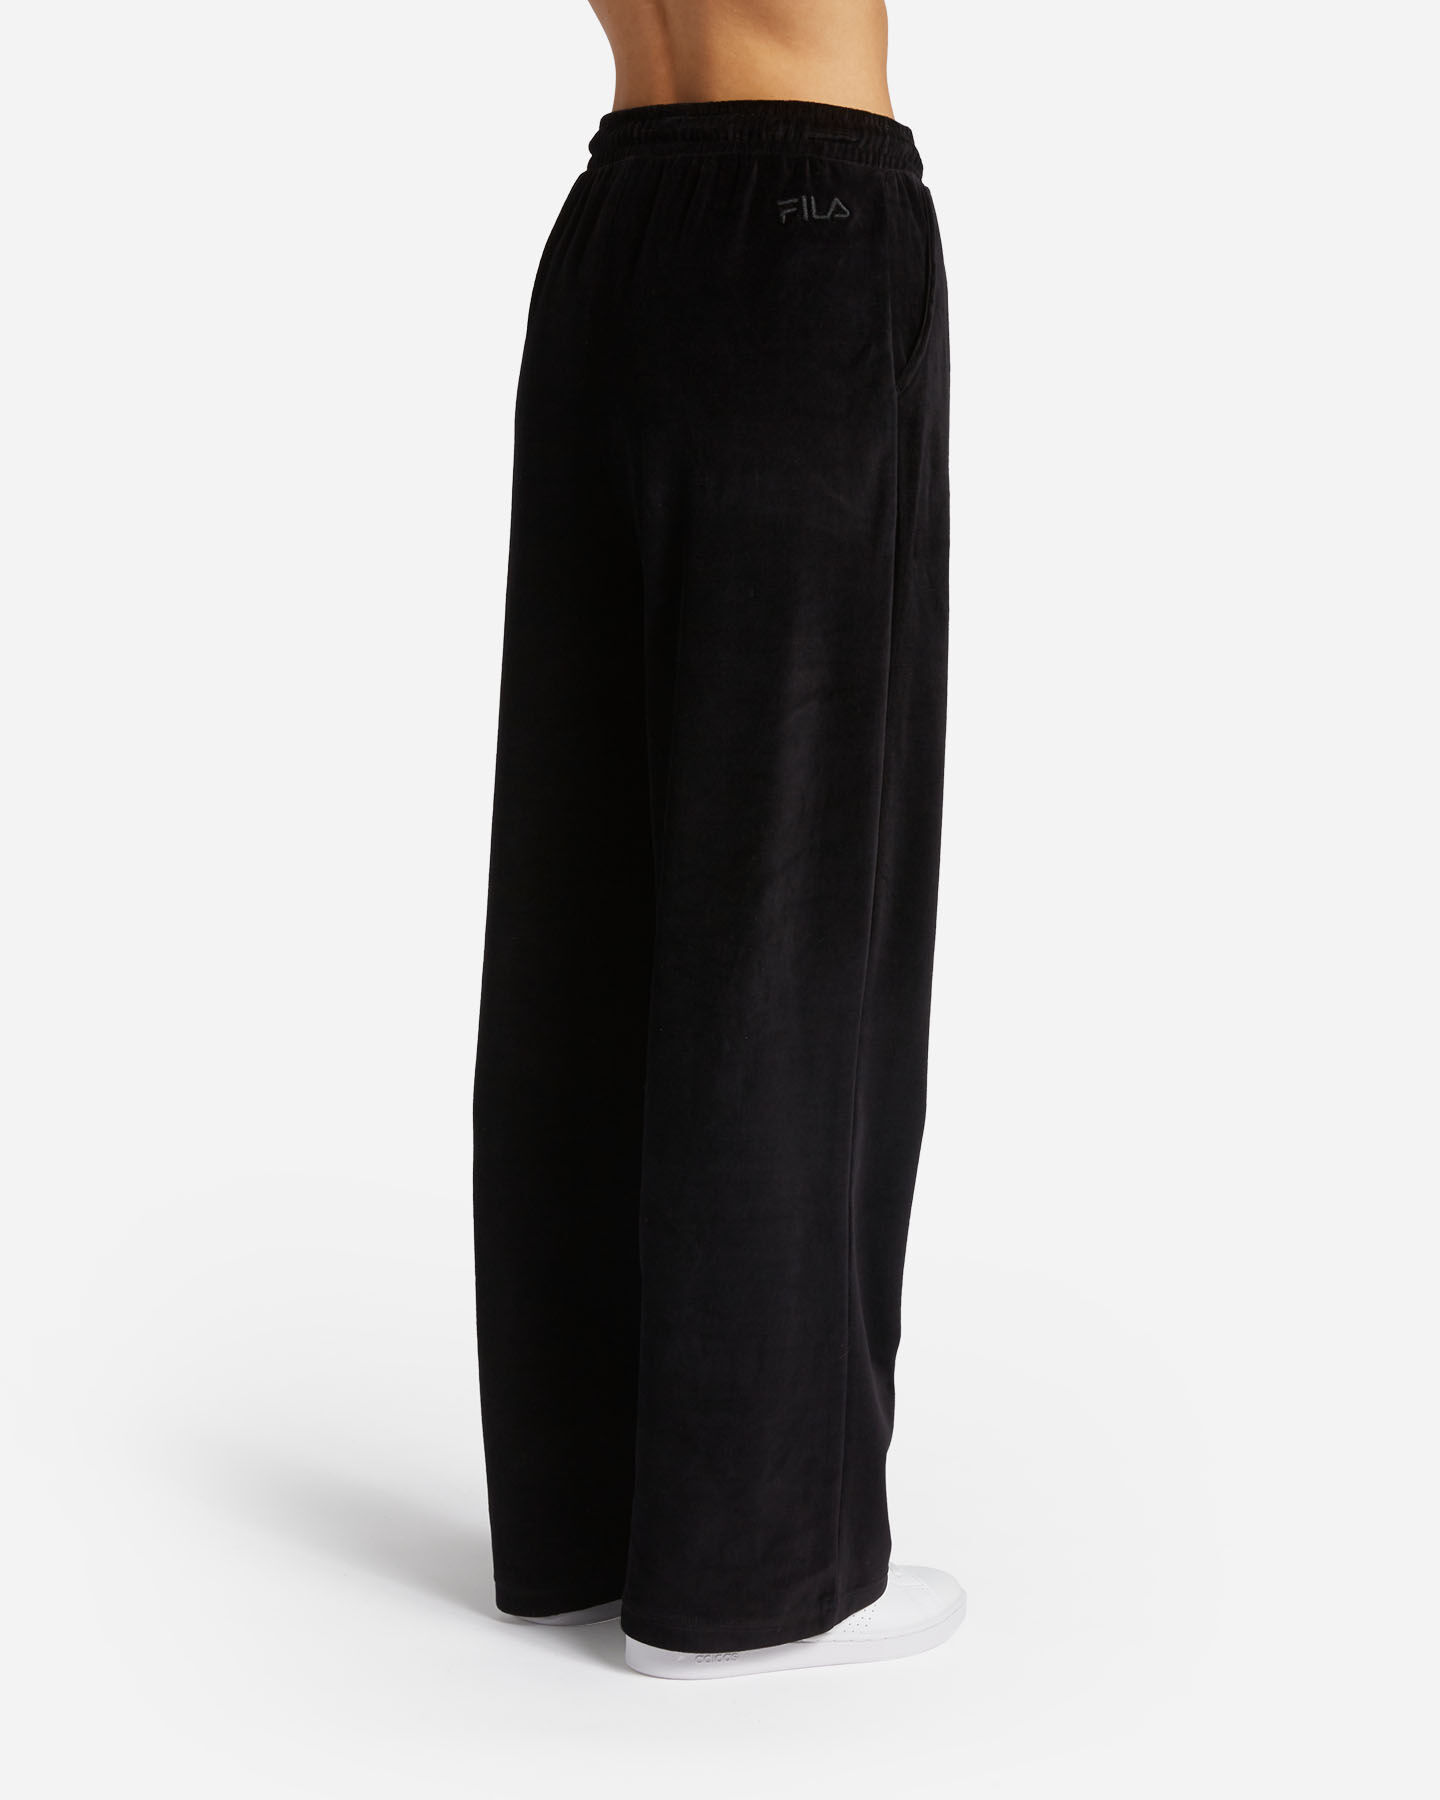  Pantalone FILA GLAM ROCK COLLECTION W S4125103|050|XS scatto 1